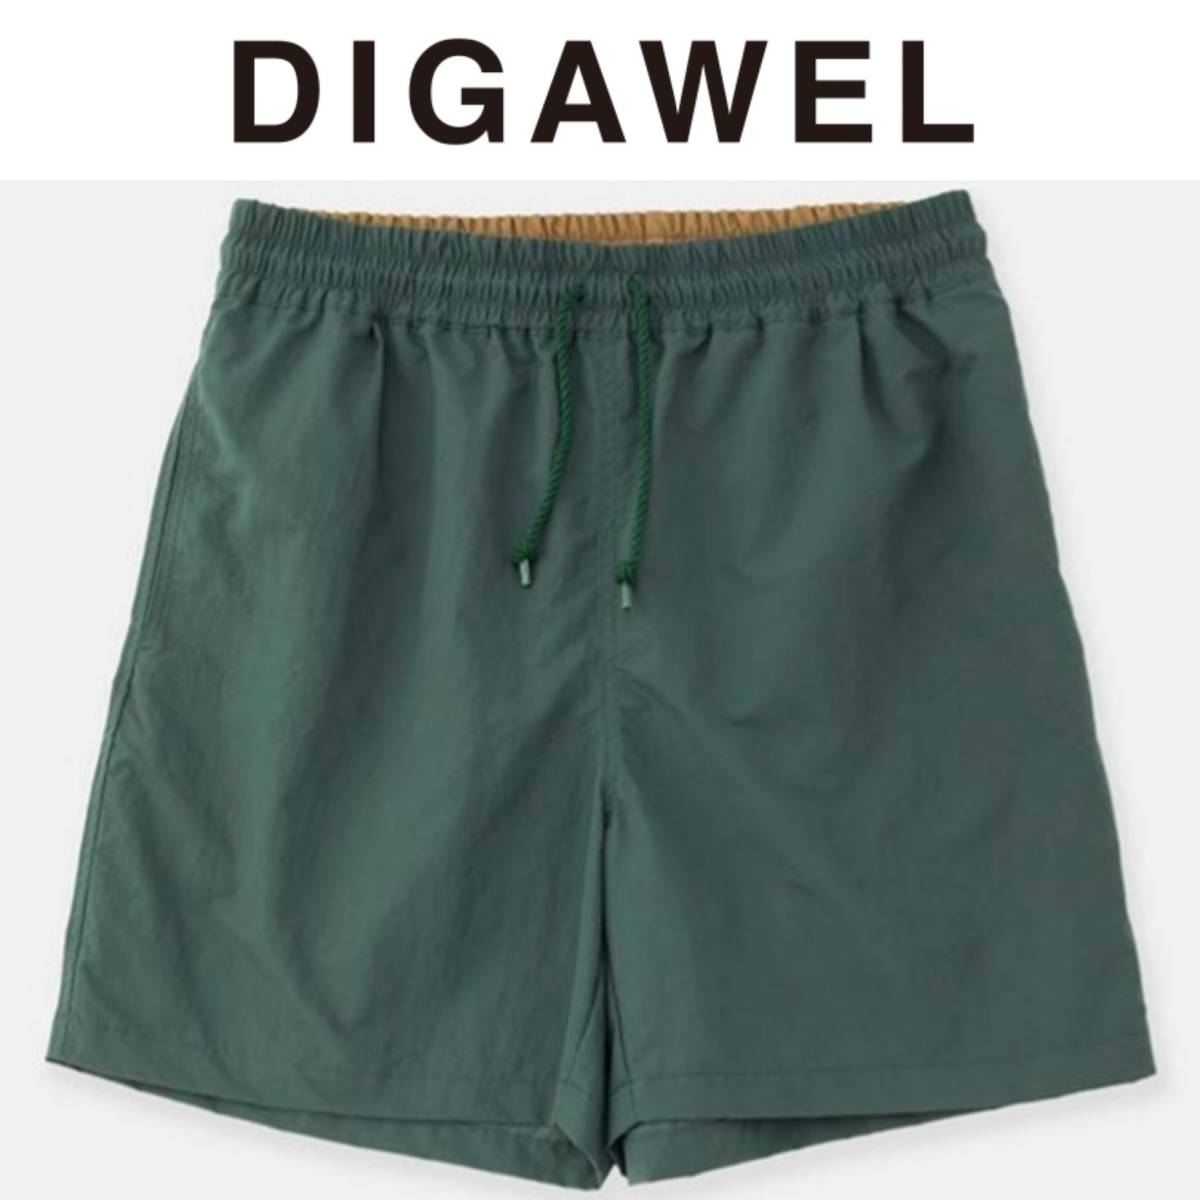 新品■22SS DIGAWEL BAGGY SHORTS 3 緑 GREEN ナイロンショーツ ショートパンツ min-nano UNION取扱ブランド ennoy